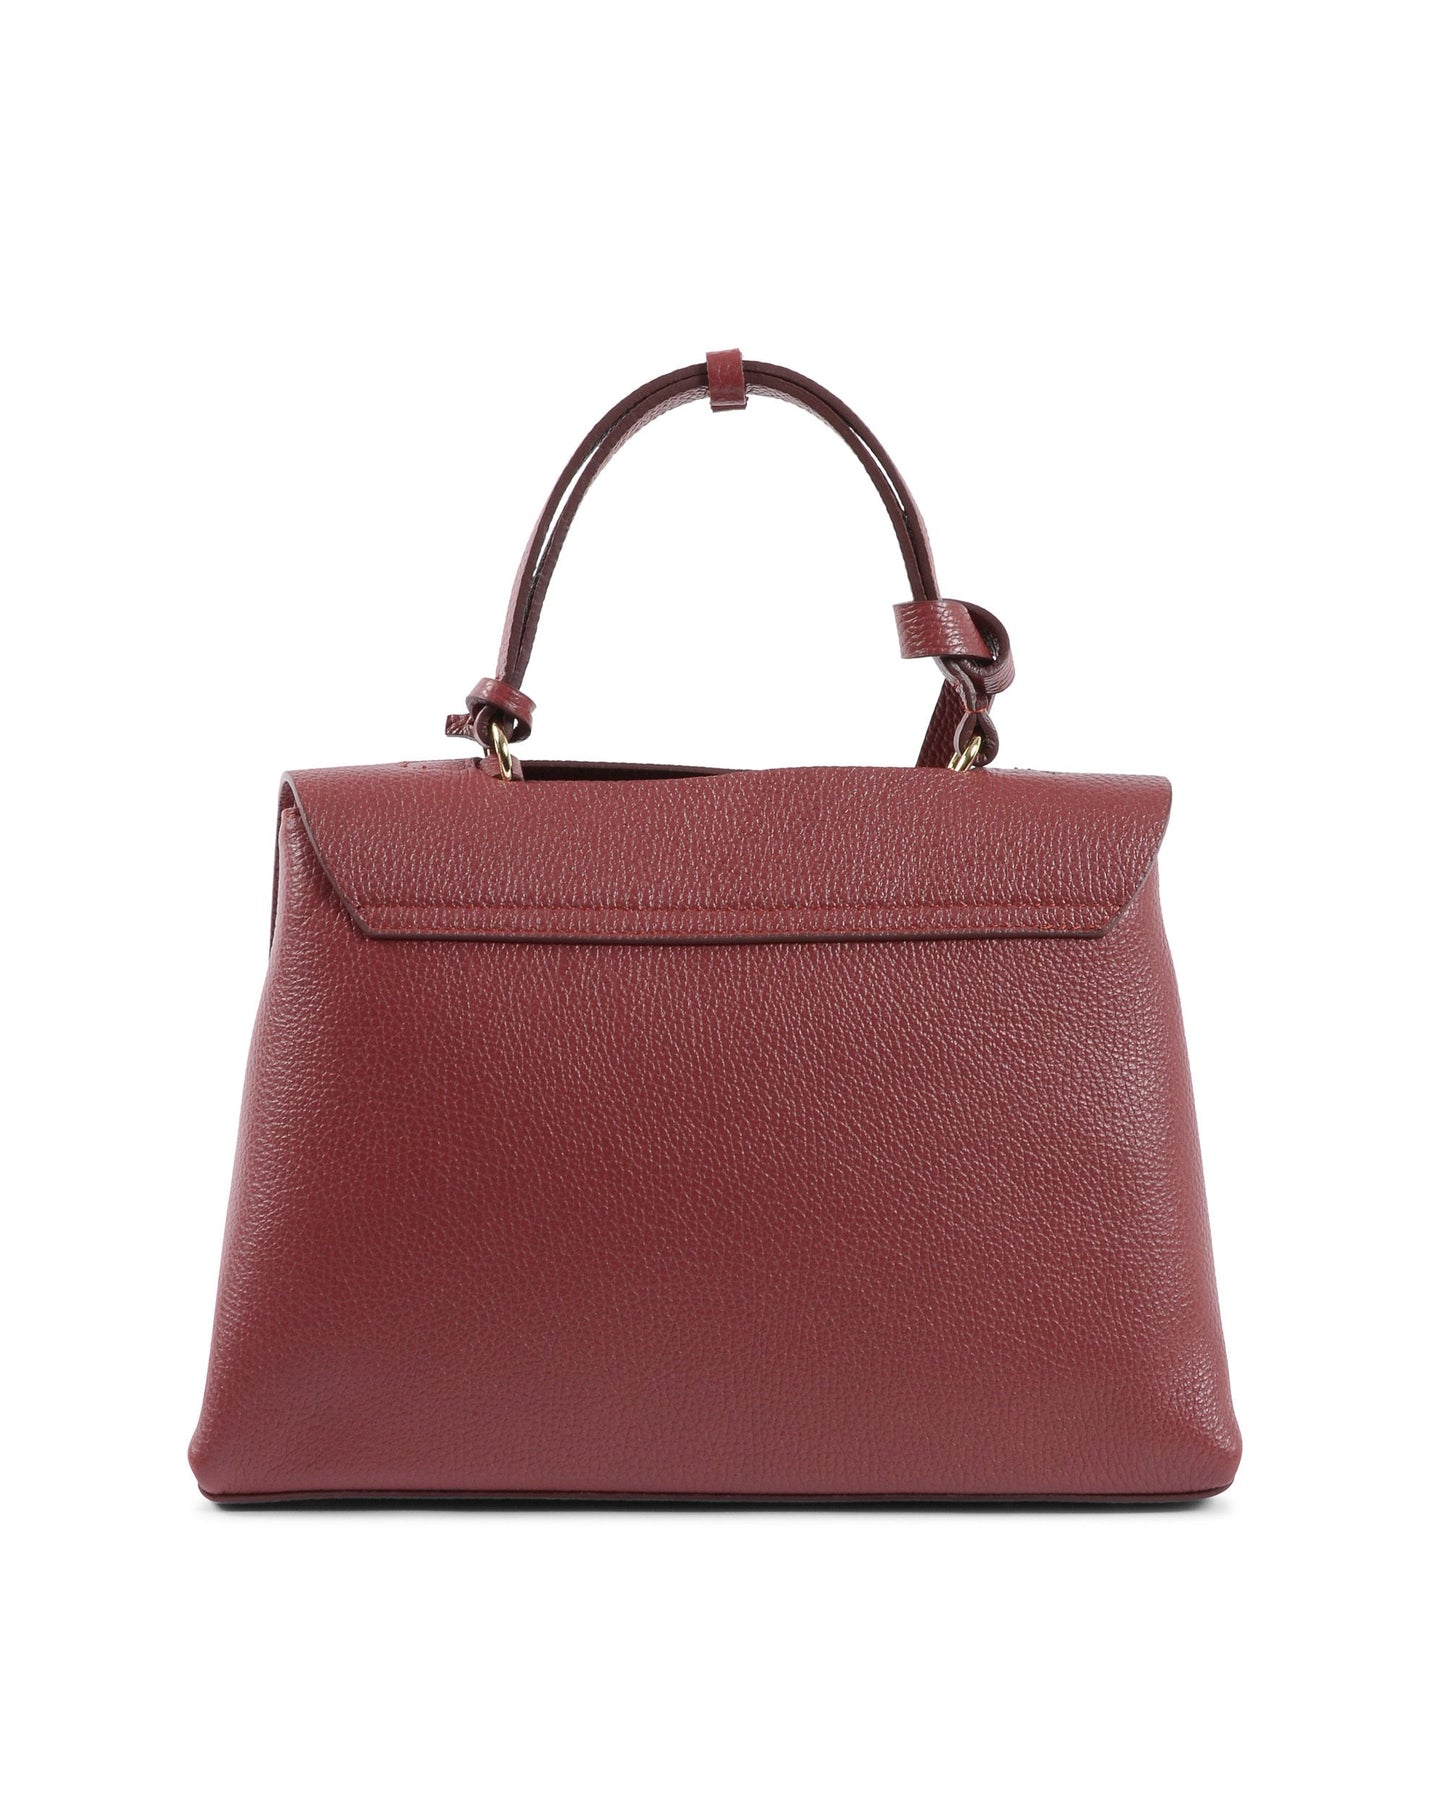 V Italia Womens Handbag Red 10520 DOLLARO RUBINO